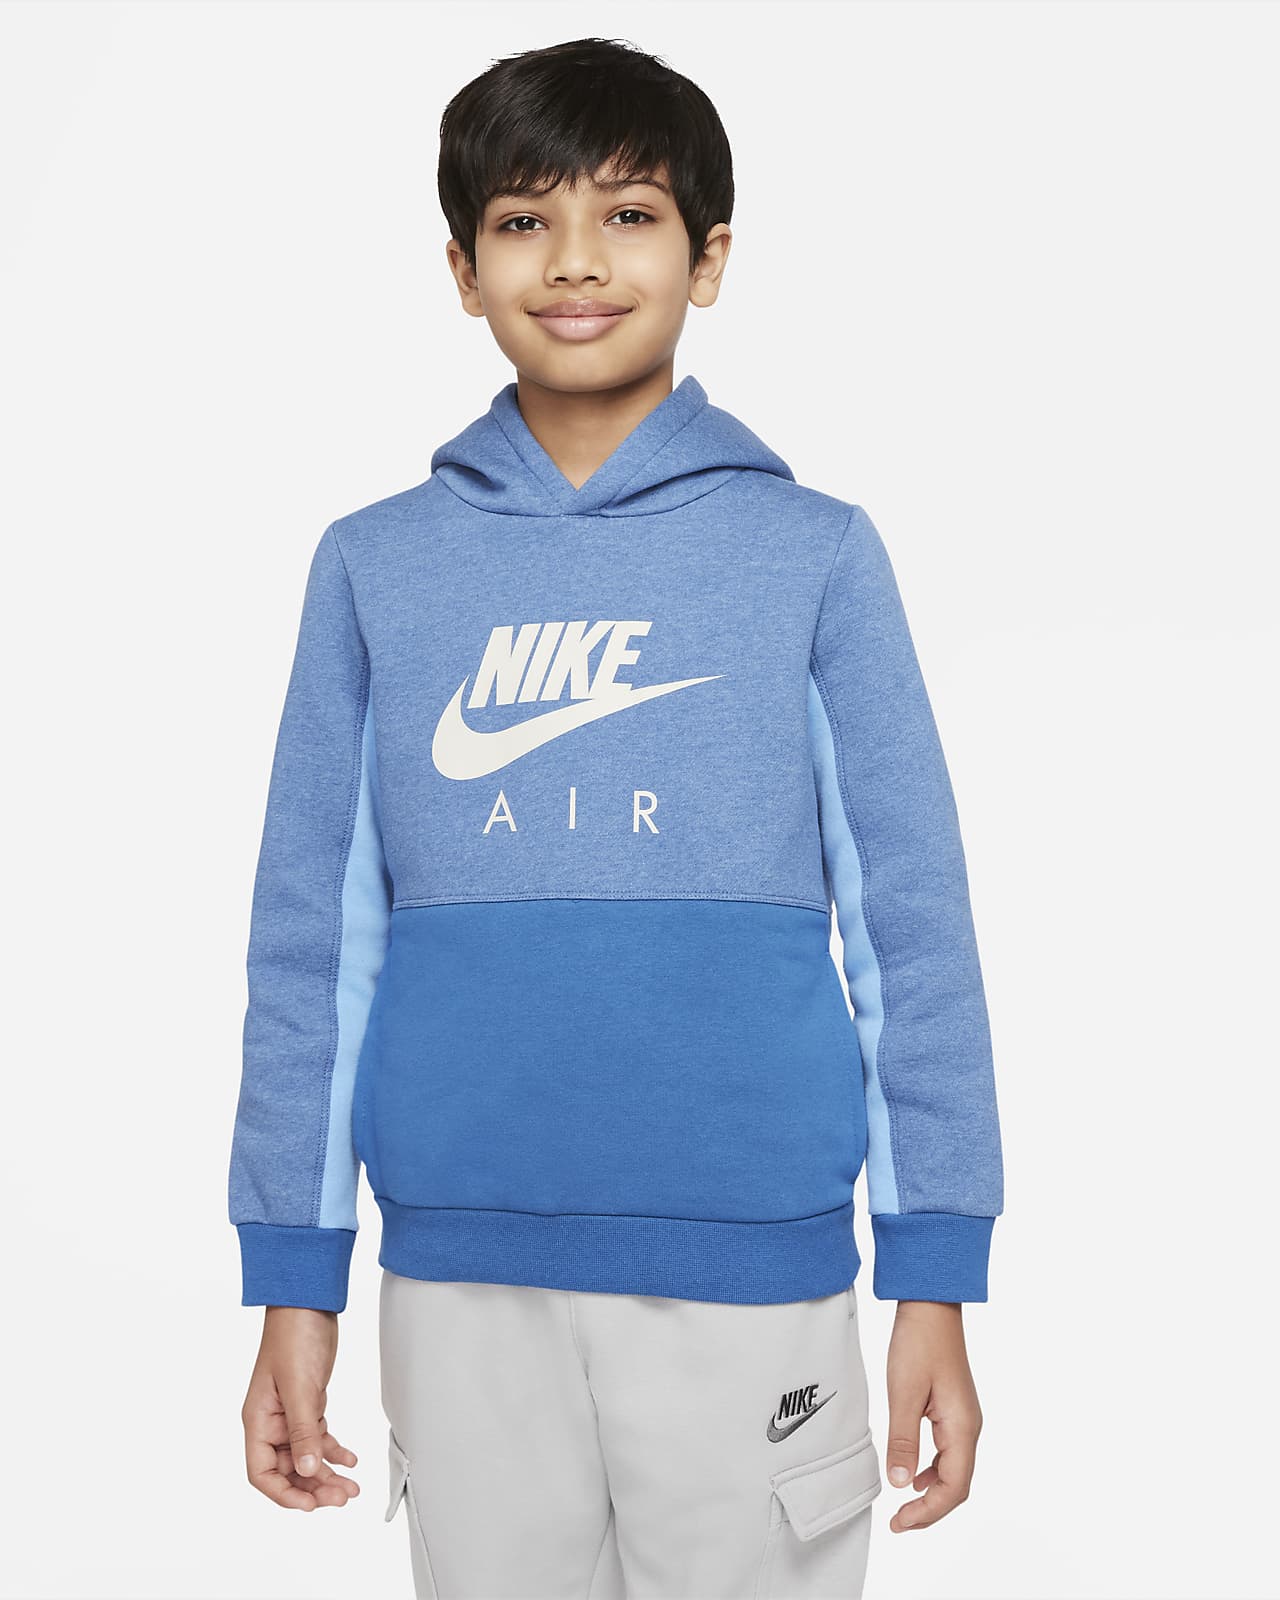 Nike Air 大童 (男童) 套頭連帽上衣